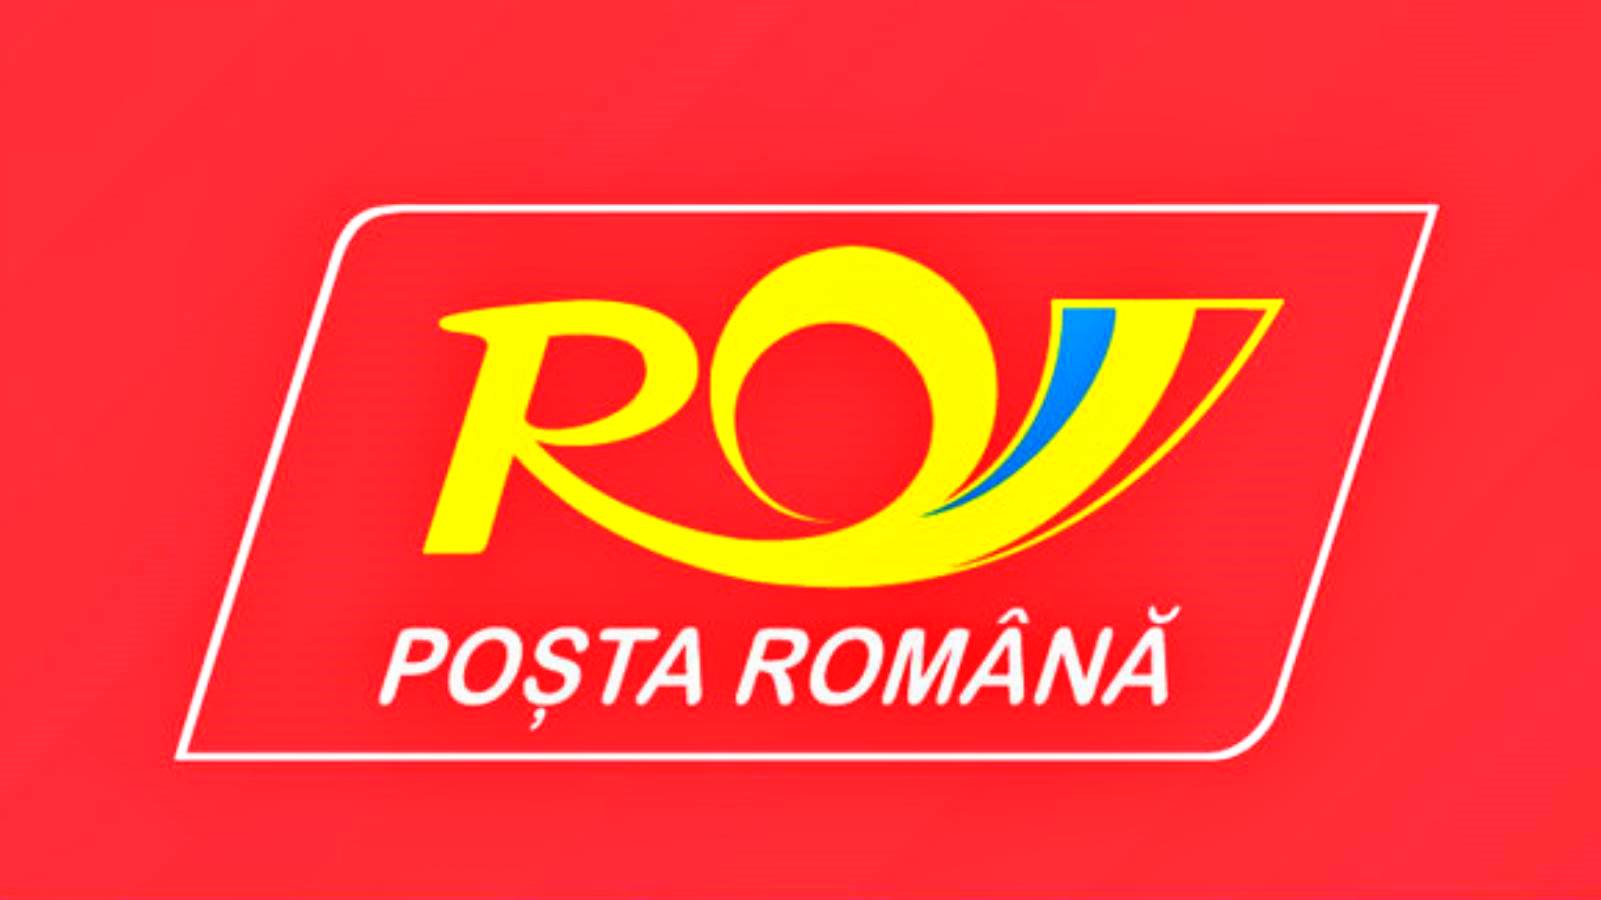 Les taxes que la Poste roumaine collecte dans les bureaux en Roumanie